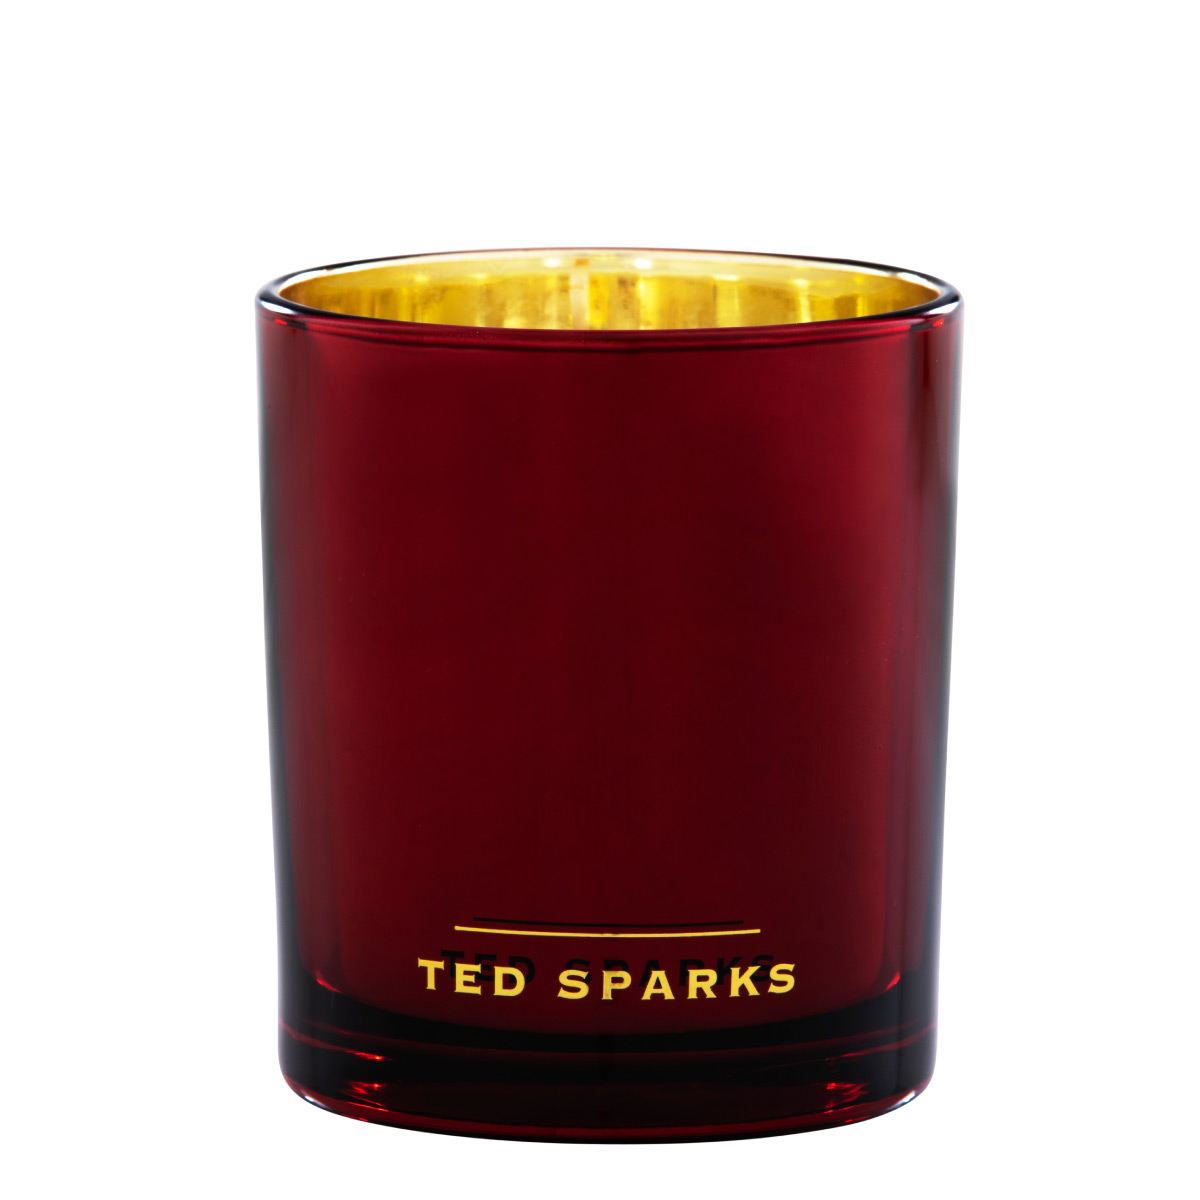 Spiced Orange & Clove - Demi Duftkerze 290g von Ted Sparks